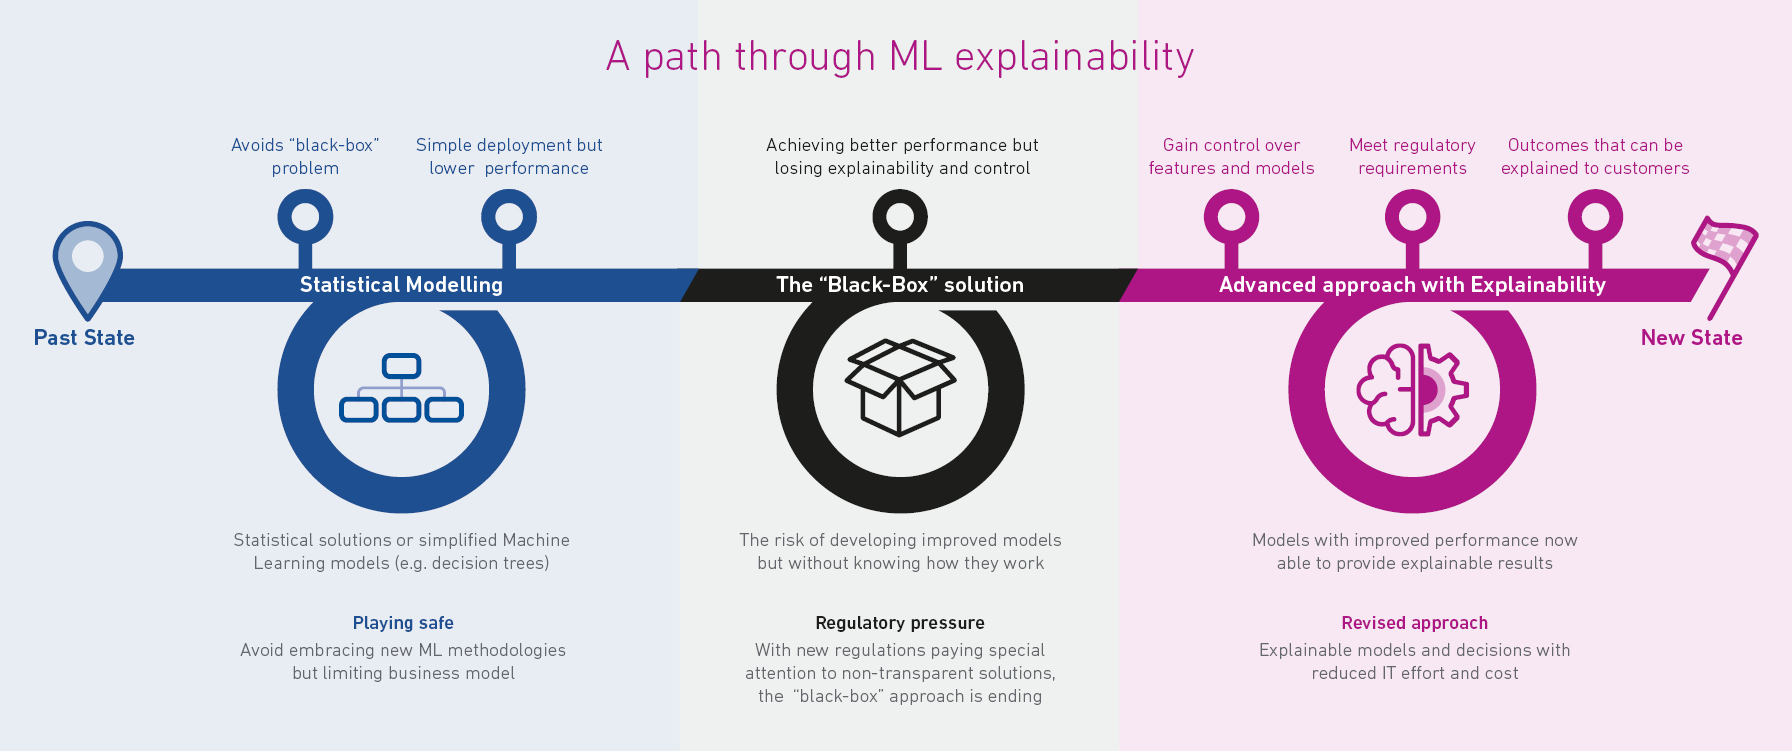 A path through ML explainability